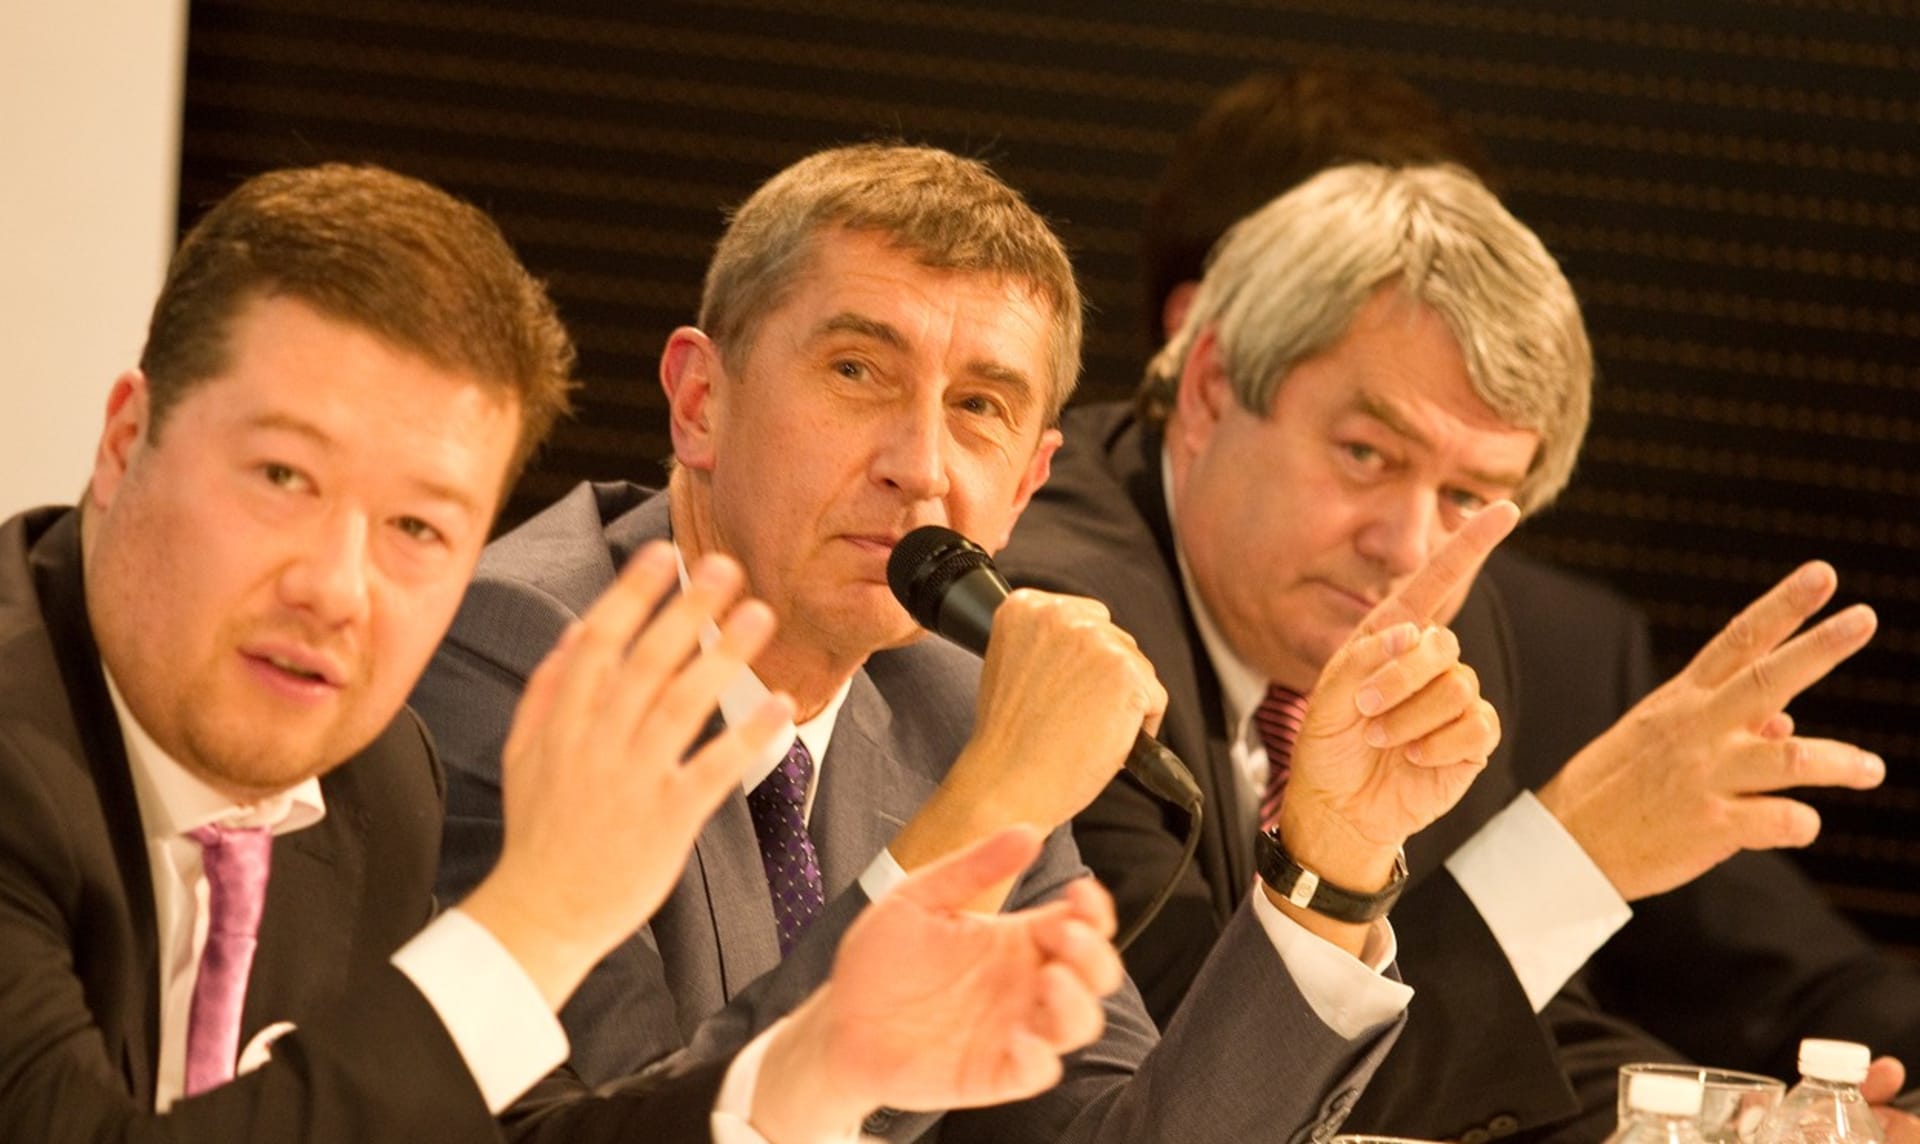 Zleva: Tomio Okamura, Andrej Babiš, Vojtěch Filip. Fotografie z debaty v roce 2013